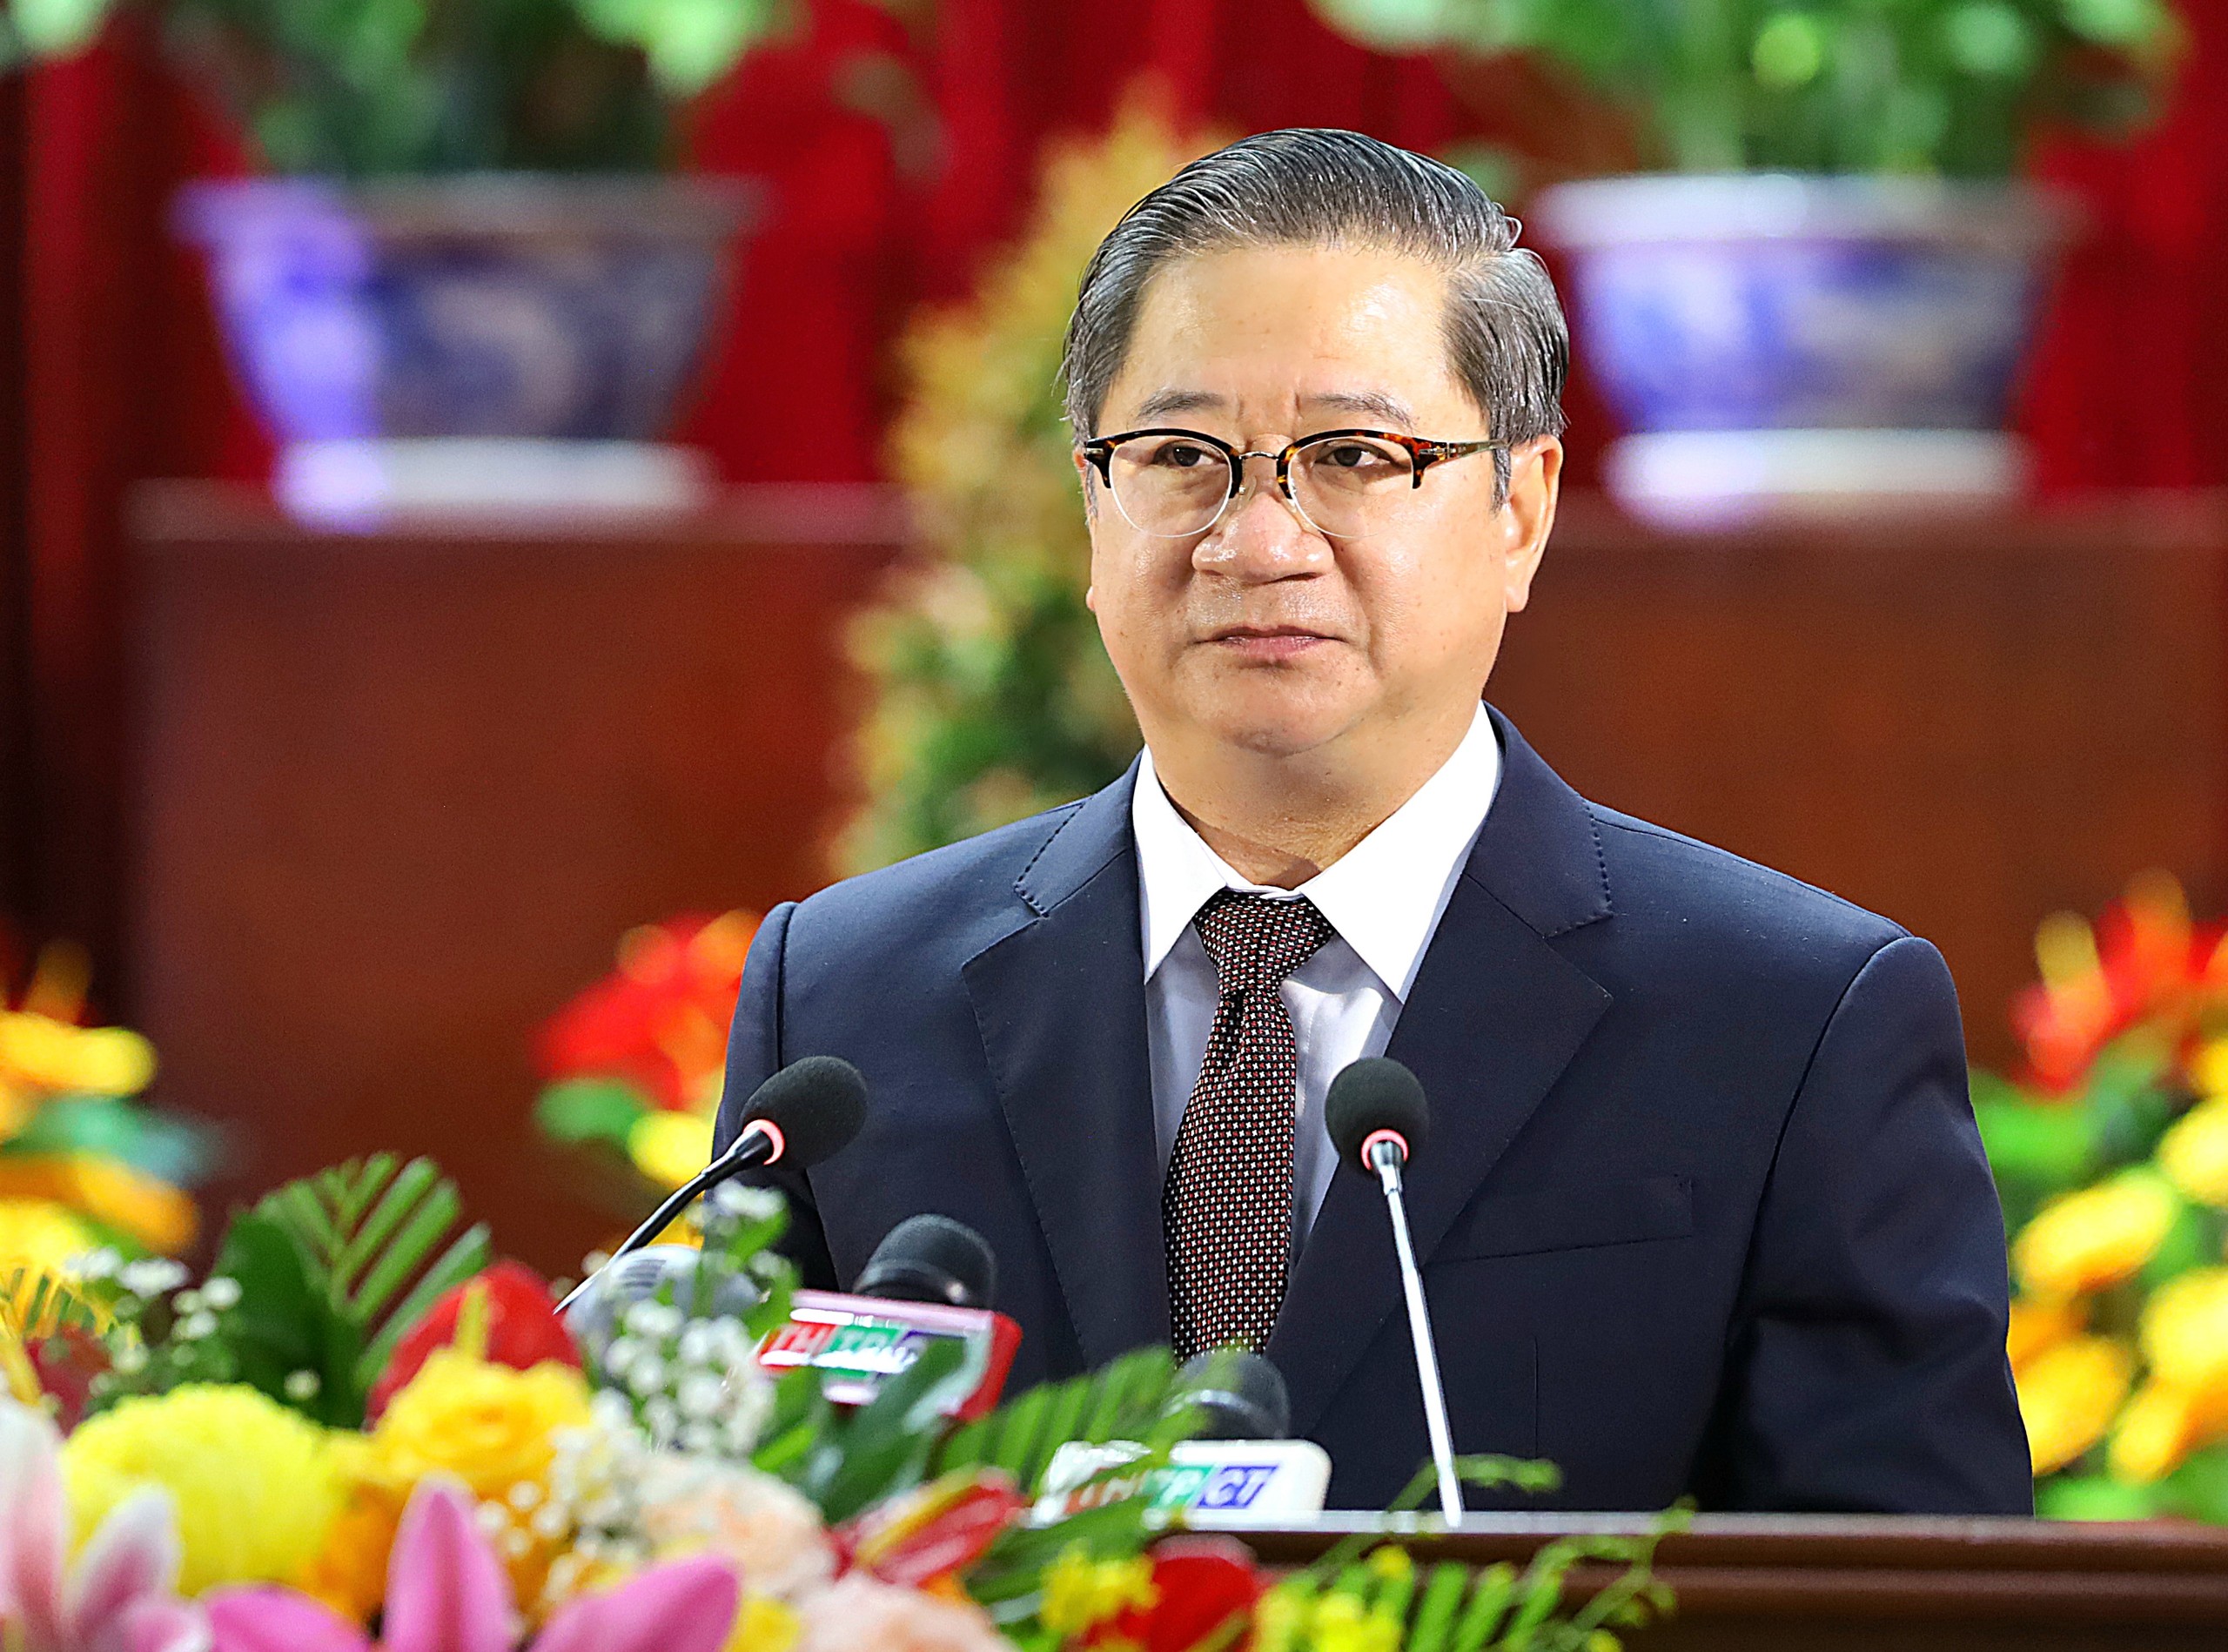 Ông Trần Việt Trường - Phó Bí thư Thành ủy, Chủ tịch UBND TP. Cần Thơ phát biểu tại buổi họp mặt.